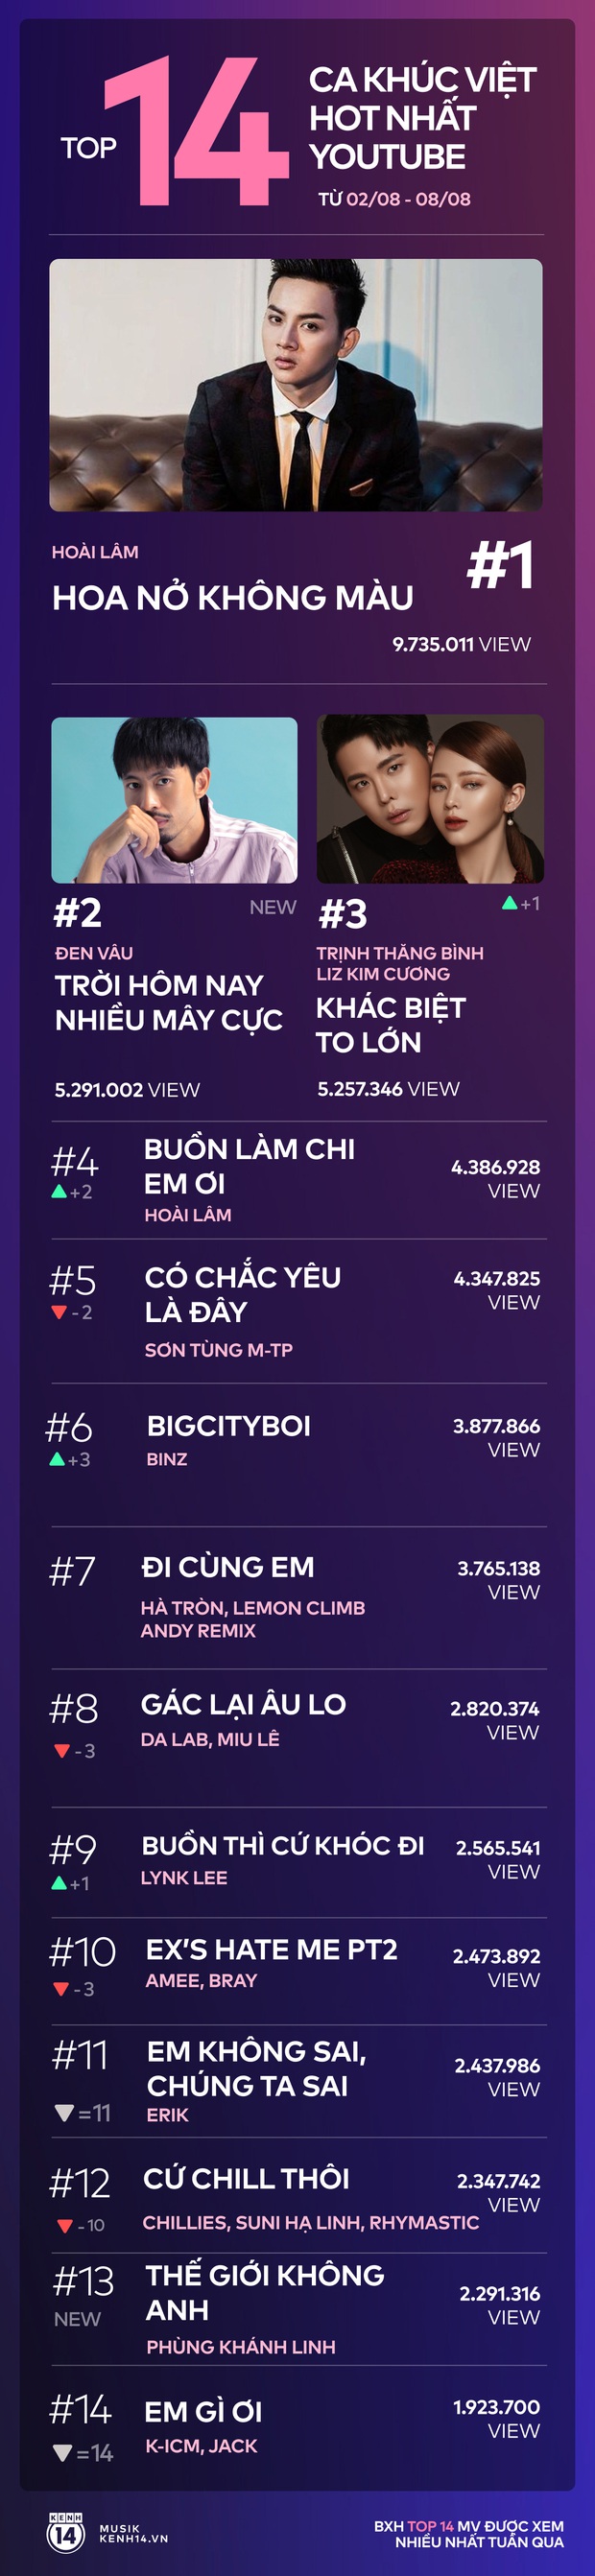 Sơn Tùng bật khỏi top 4, Đen Vâu vào thẳng top 2 sau 3 ngày; Hoài Lâm quyết không rời #1 những ca khúc Việt hot nhất YouTube tuần qua! - Ảnh 14.